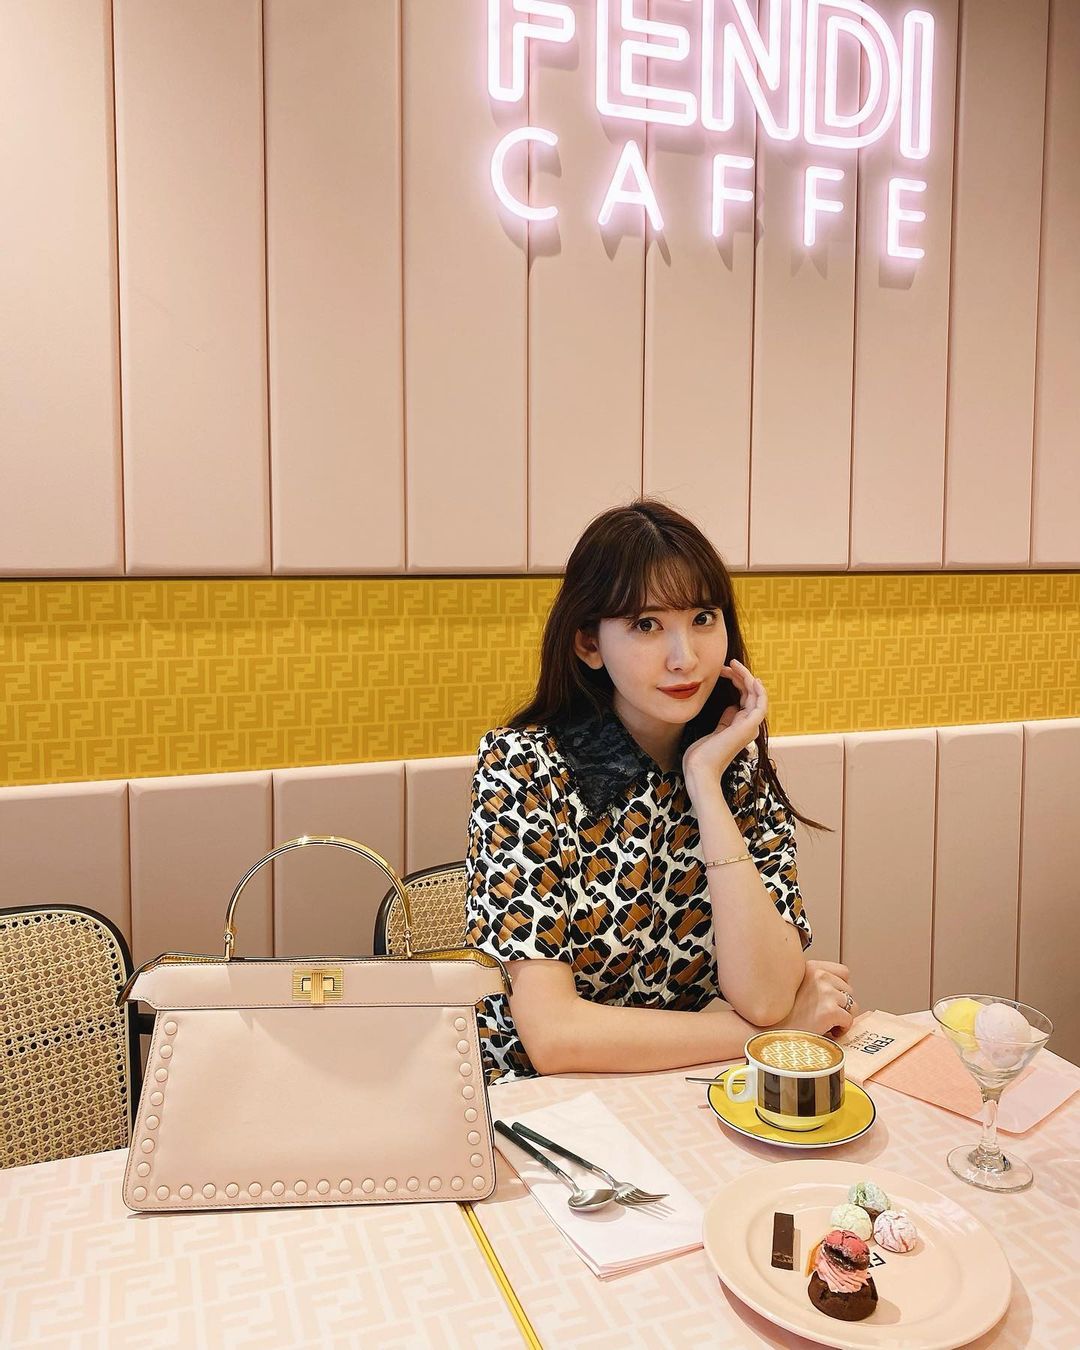 小嶋陽菜 Fendi Caffe By Anniversaireへ 可愛い空間に心躍った 期間限定で明日からオープンです Fendicafe Wacoca Japan People Life Style